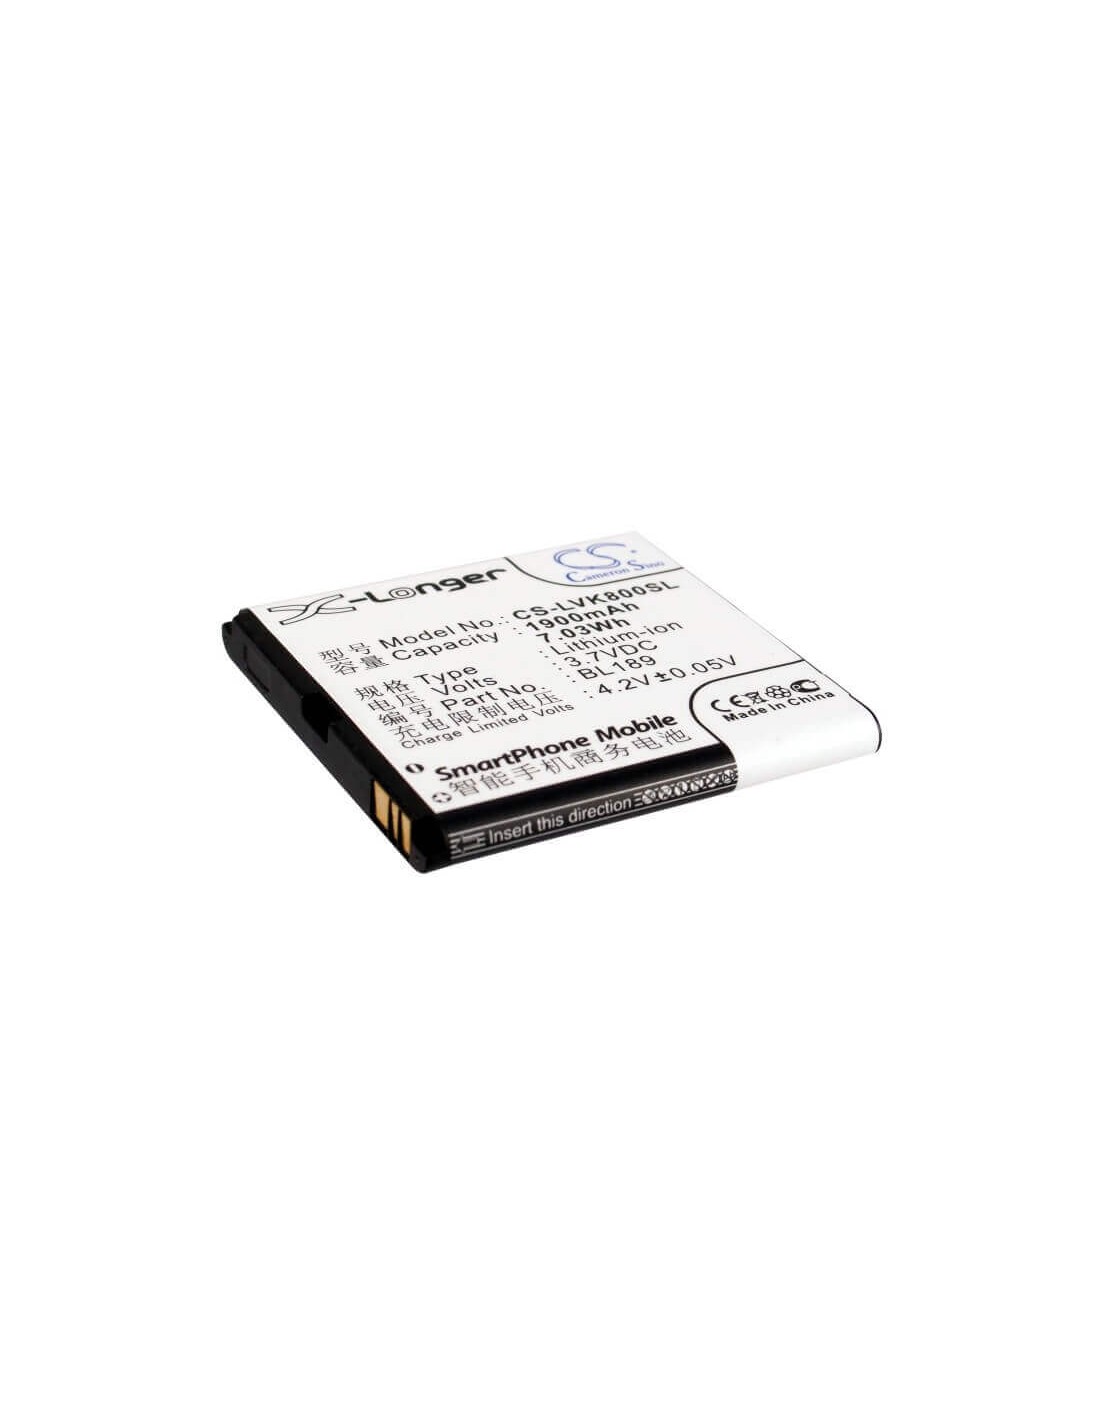 Battery for Lenovo K800 3.7V, 1900mAh - 7.03Wh